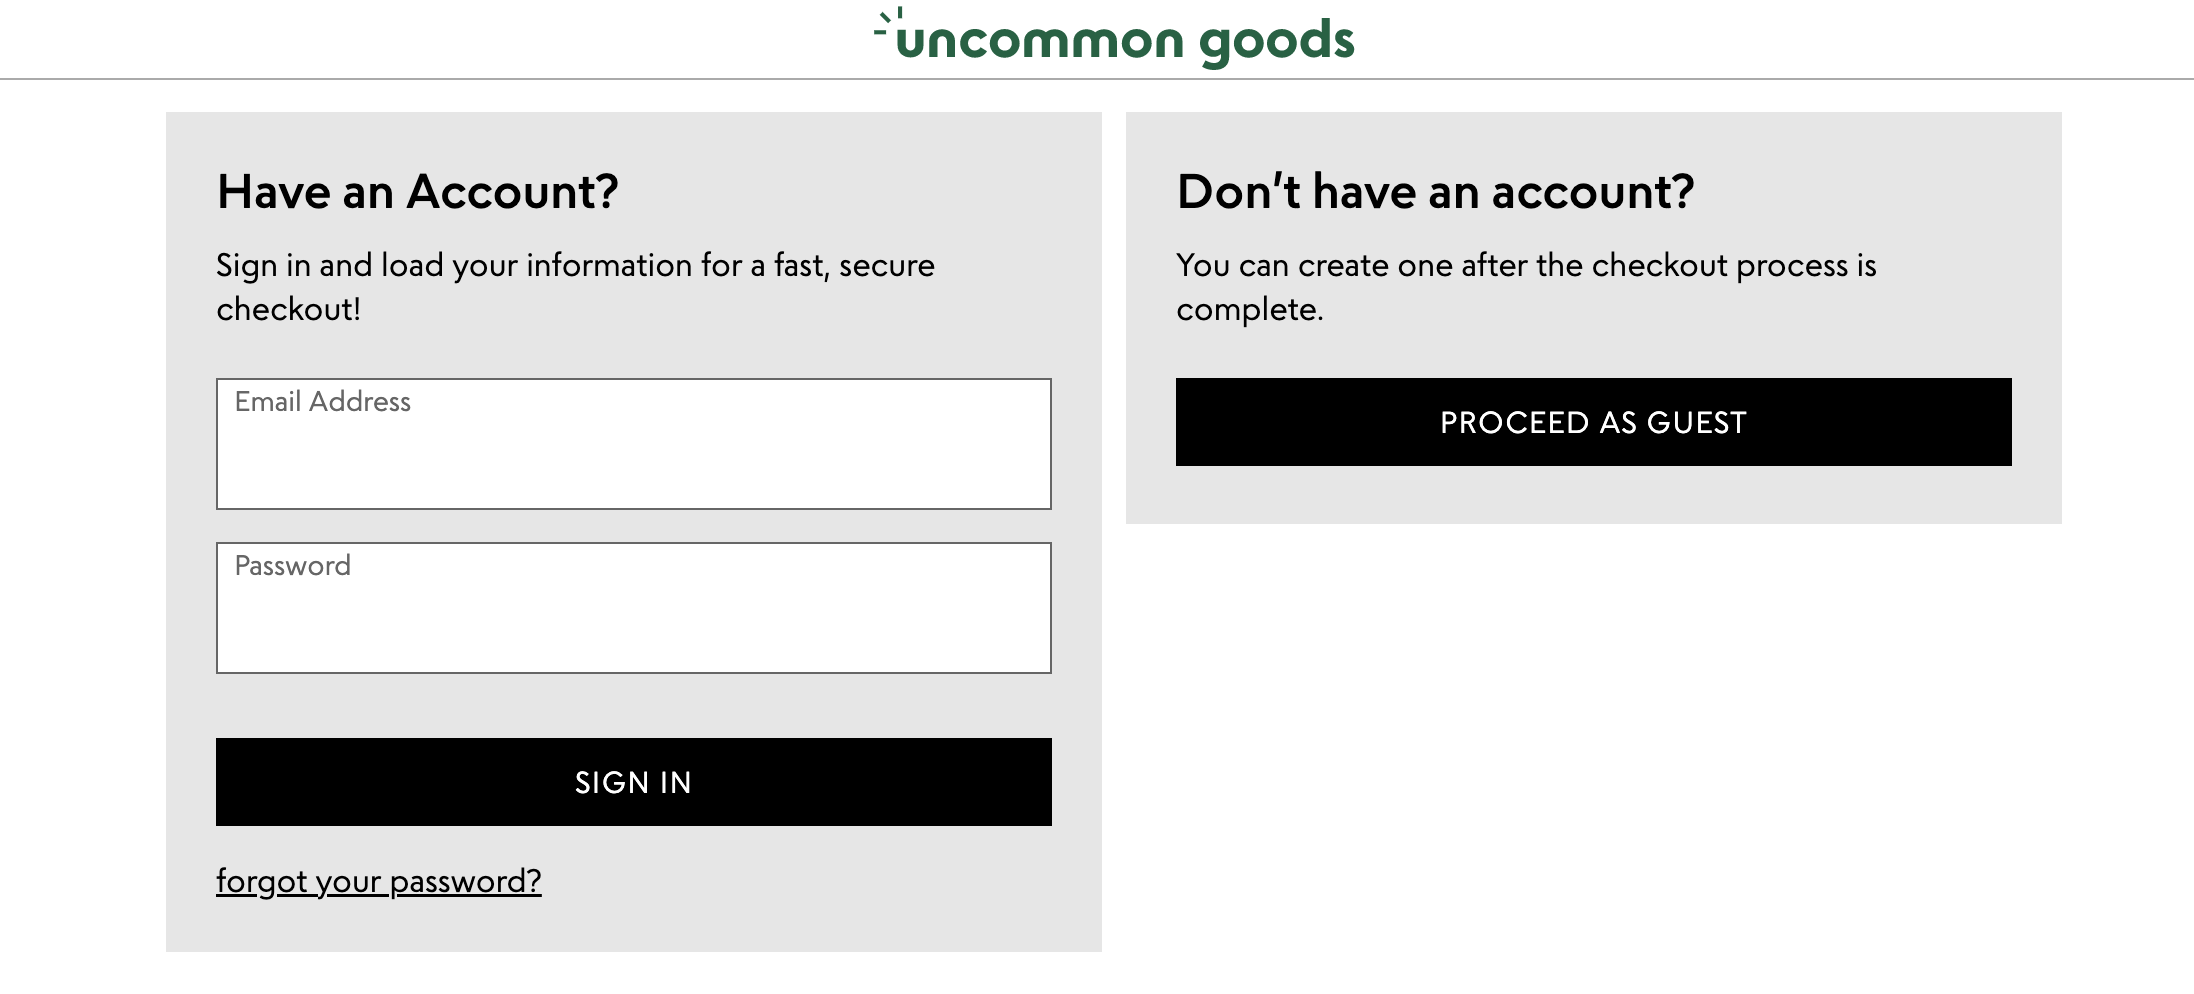 Przykład opcji płatności przez gościa w witrynie Uncommon Goods